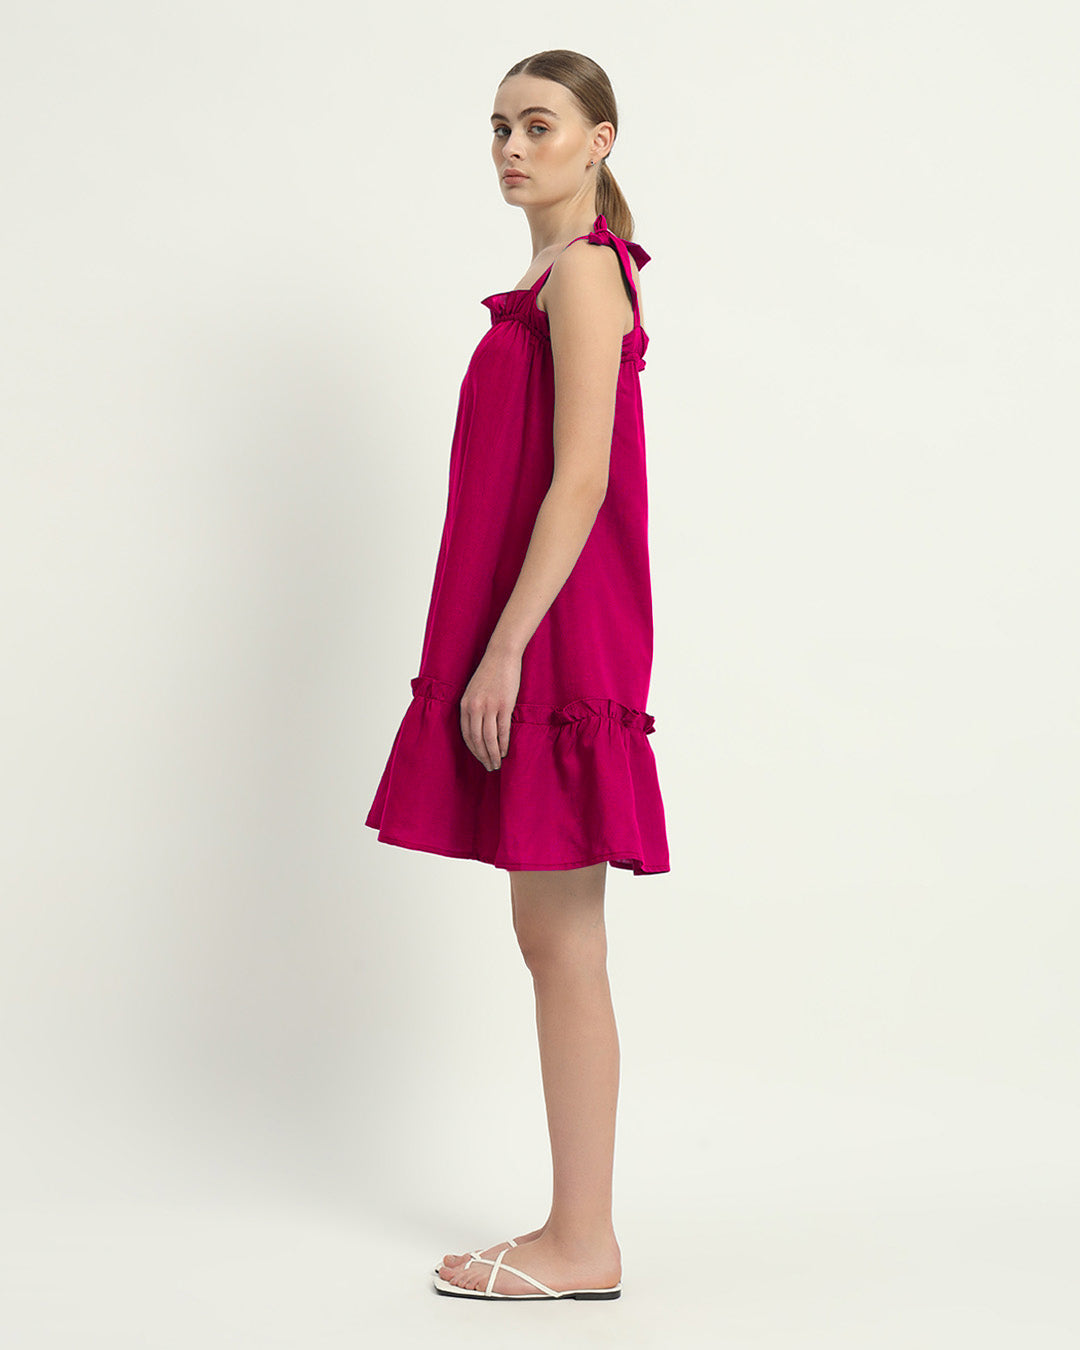 The Amalfi Berry Cotton Dress